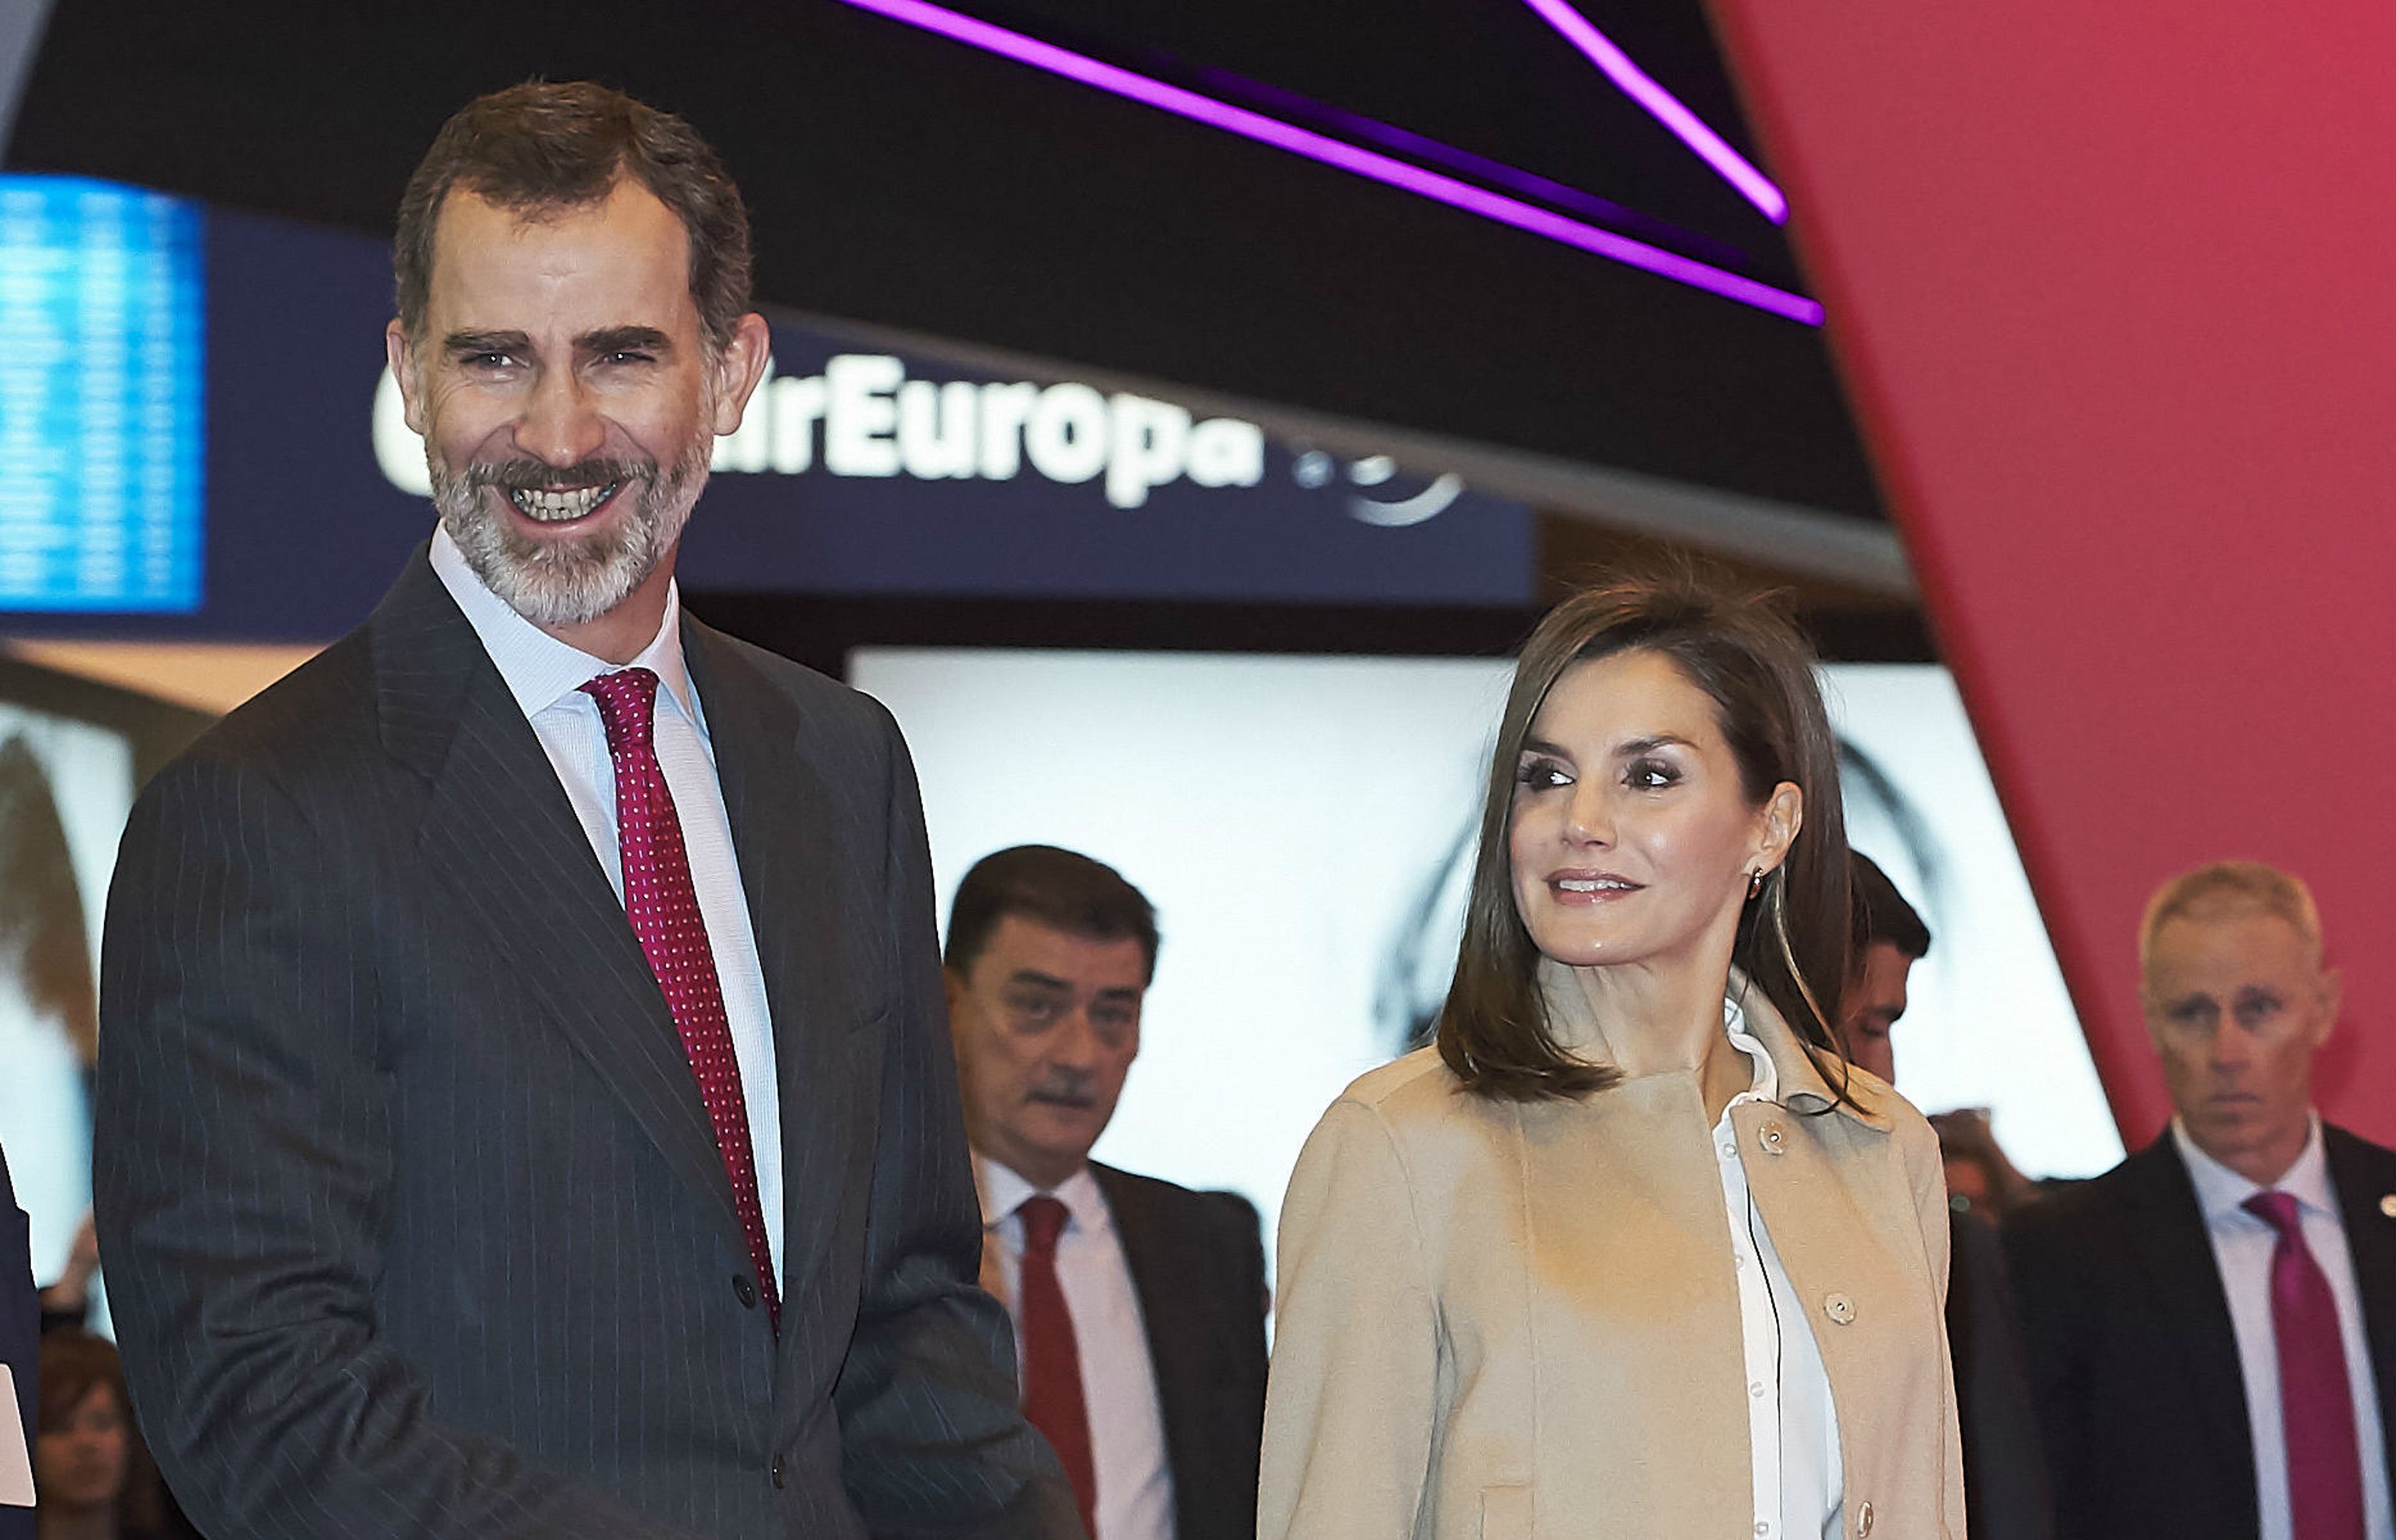 Los reyes Felipe y Letizia en la inauguración de Fitur 2018, el 17 de enero de 2018 en Madrid.